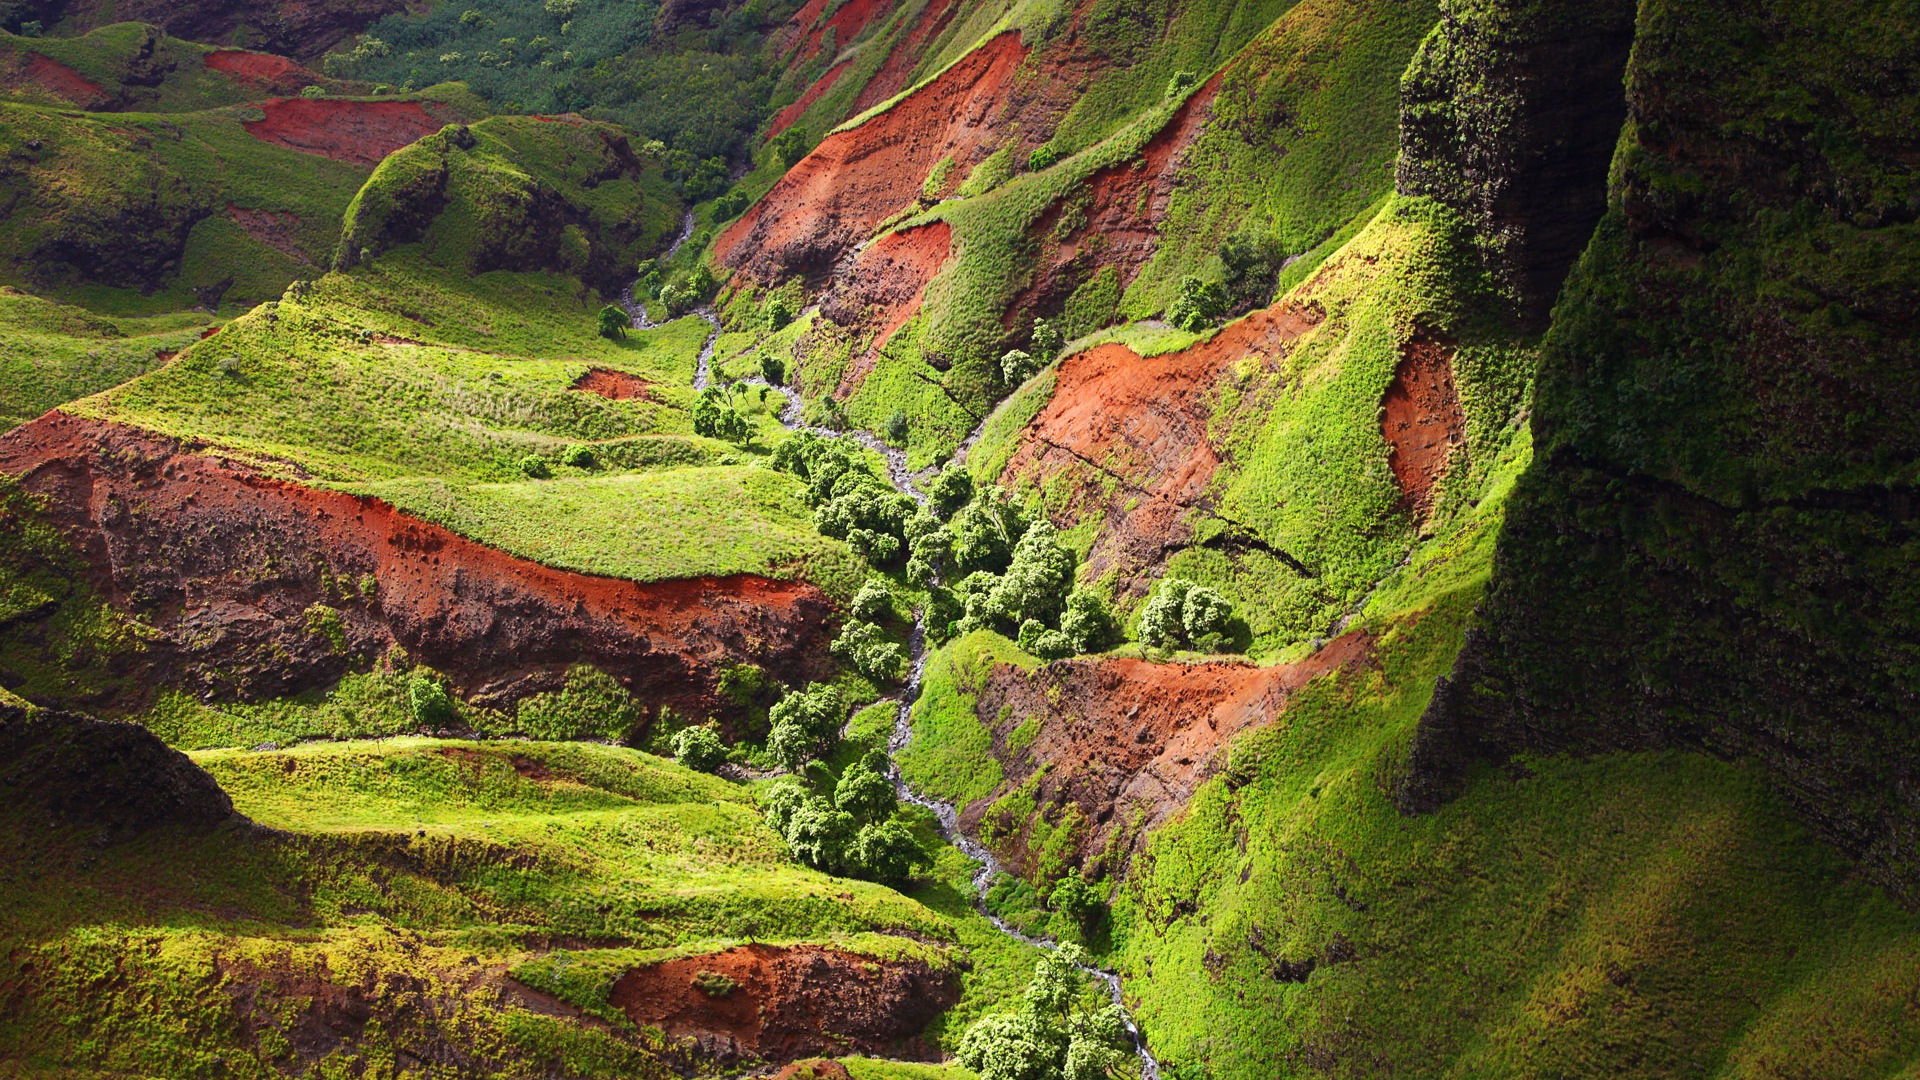 Windows 8 Theme Wallpaper: Hawaiian Landschaft #4 - 1920x1080